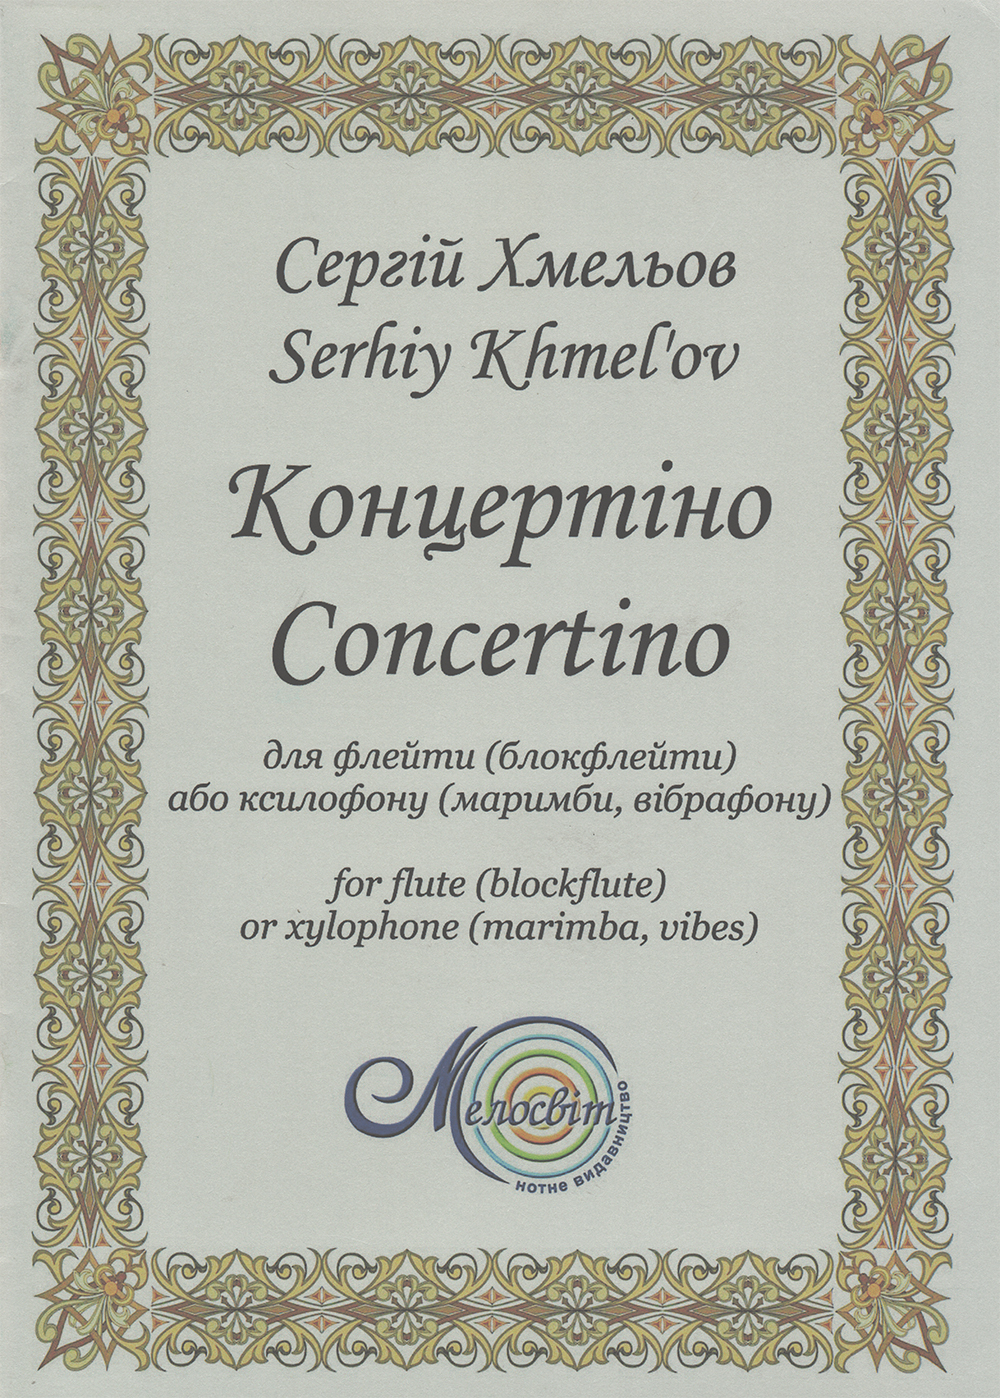 Ноты Концертіно для флейти (блокфлейти) або ксилофону (маримби, вібрафону)0